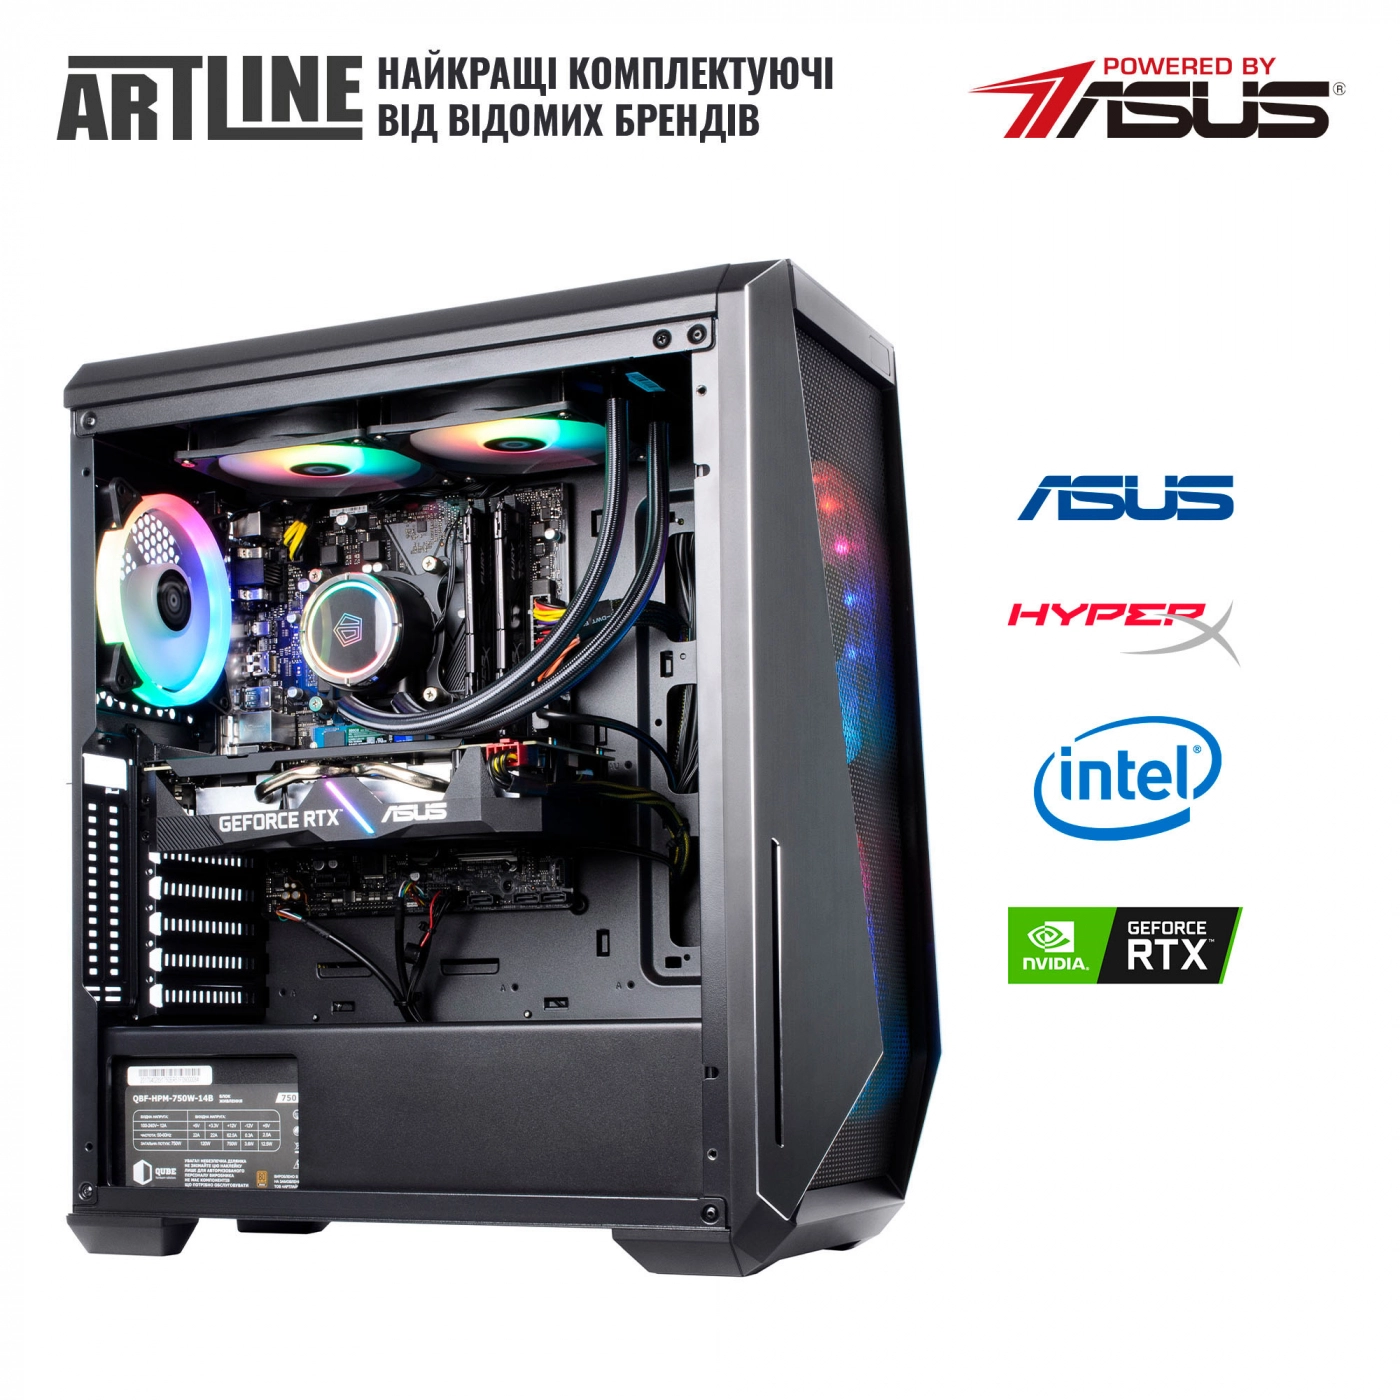 Купить Компьютер ARTLINE Gaming X77v53 - фото 7